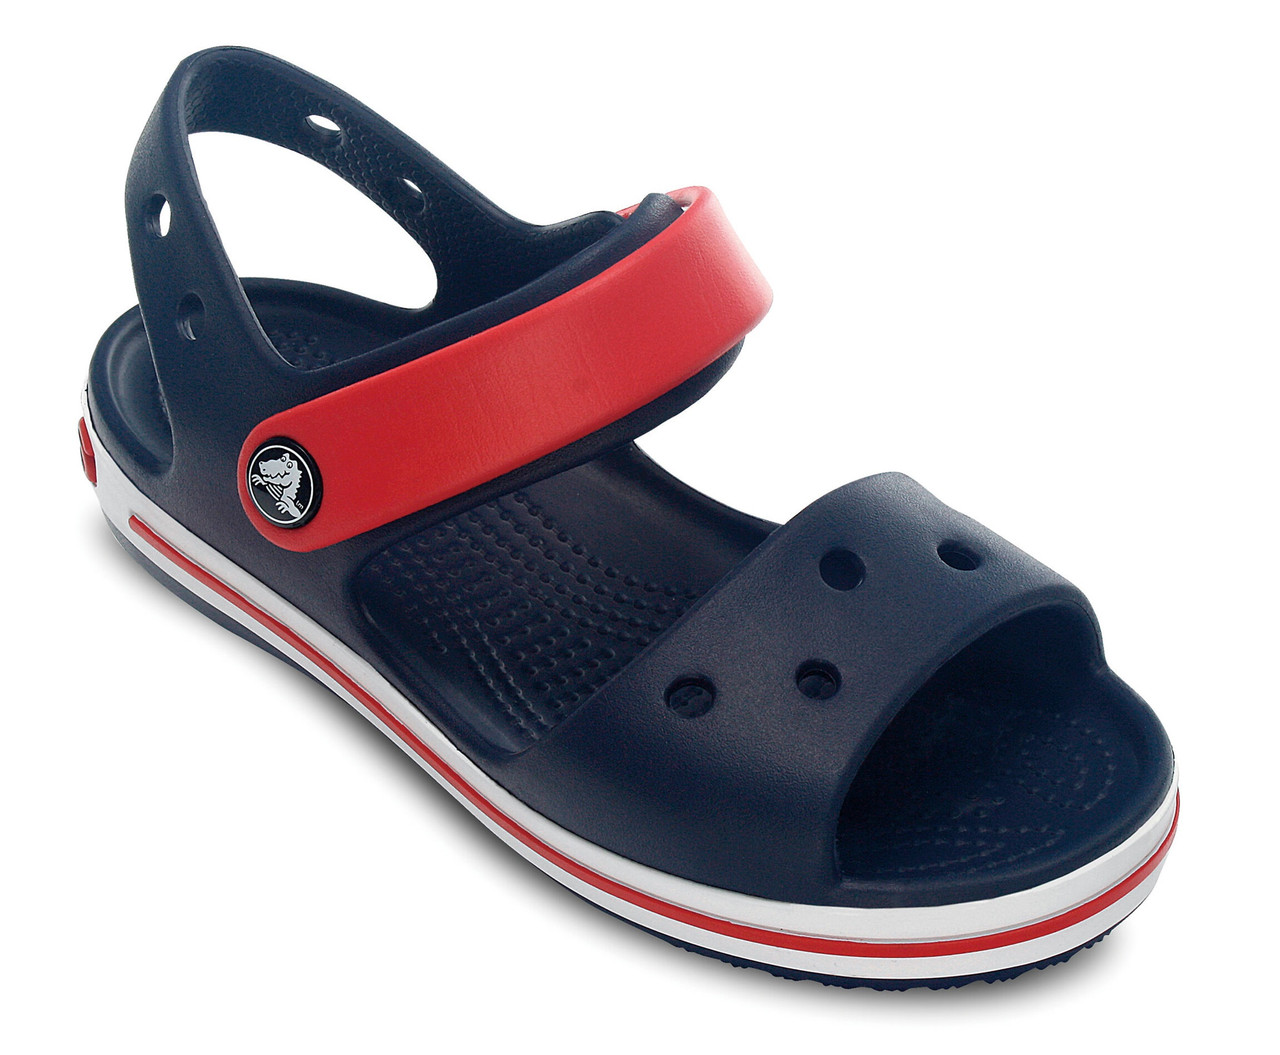 Босоніжки, сандалі для хлопчика Крокси Крокбенд оригінал / Crocs Kids Crocband Sandal (12856), Темно-сині